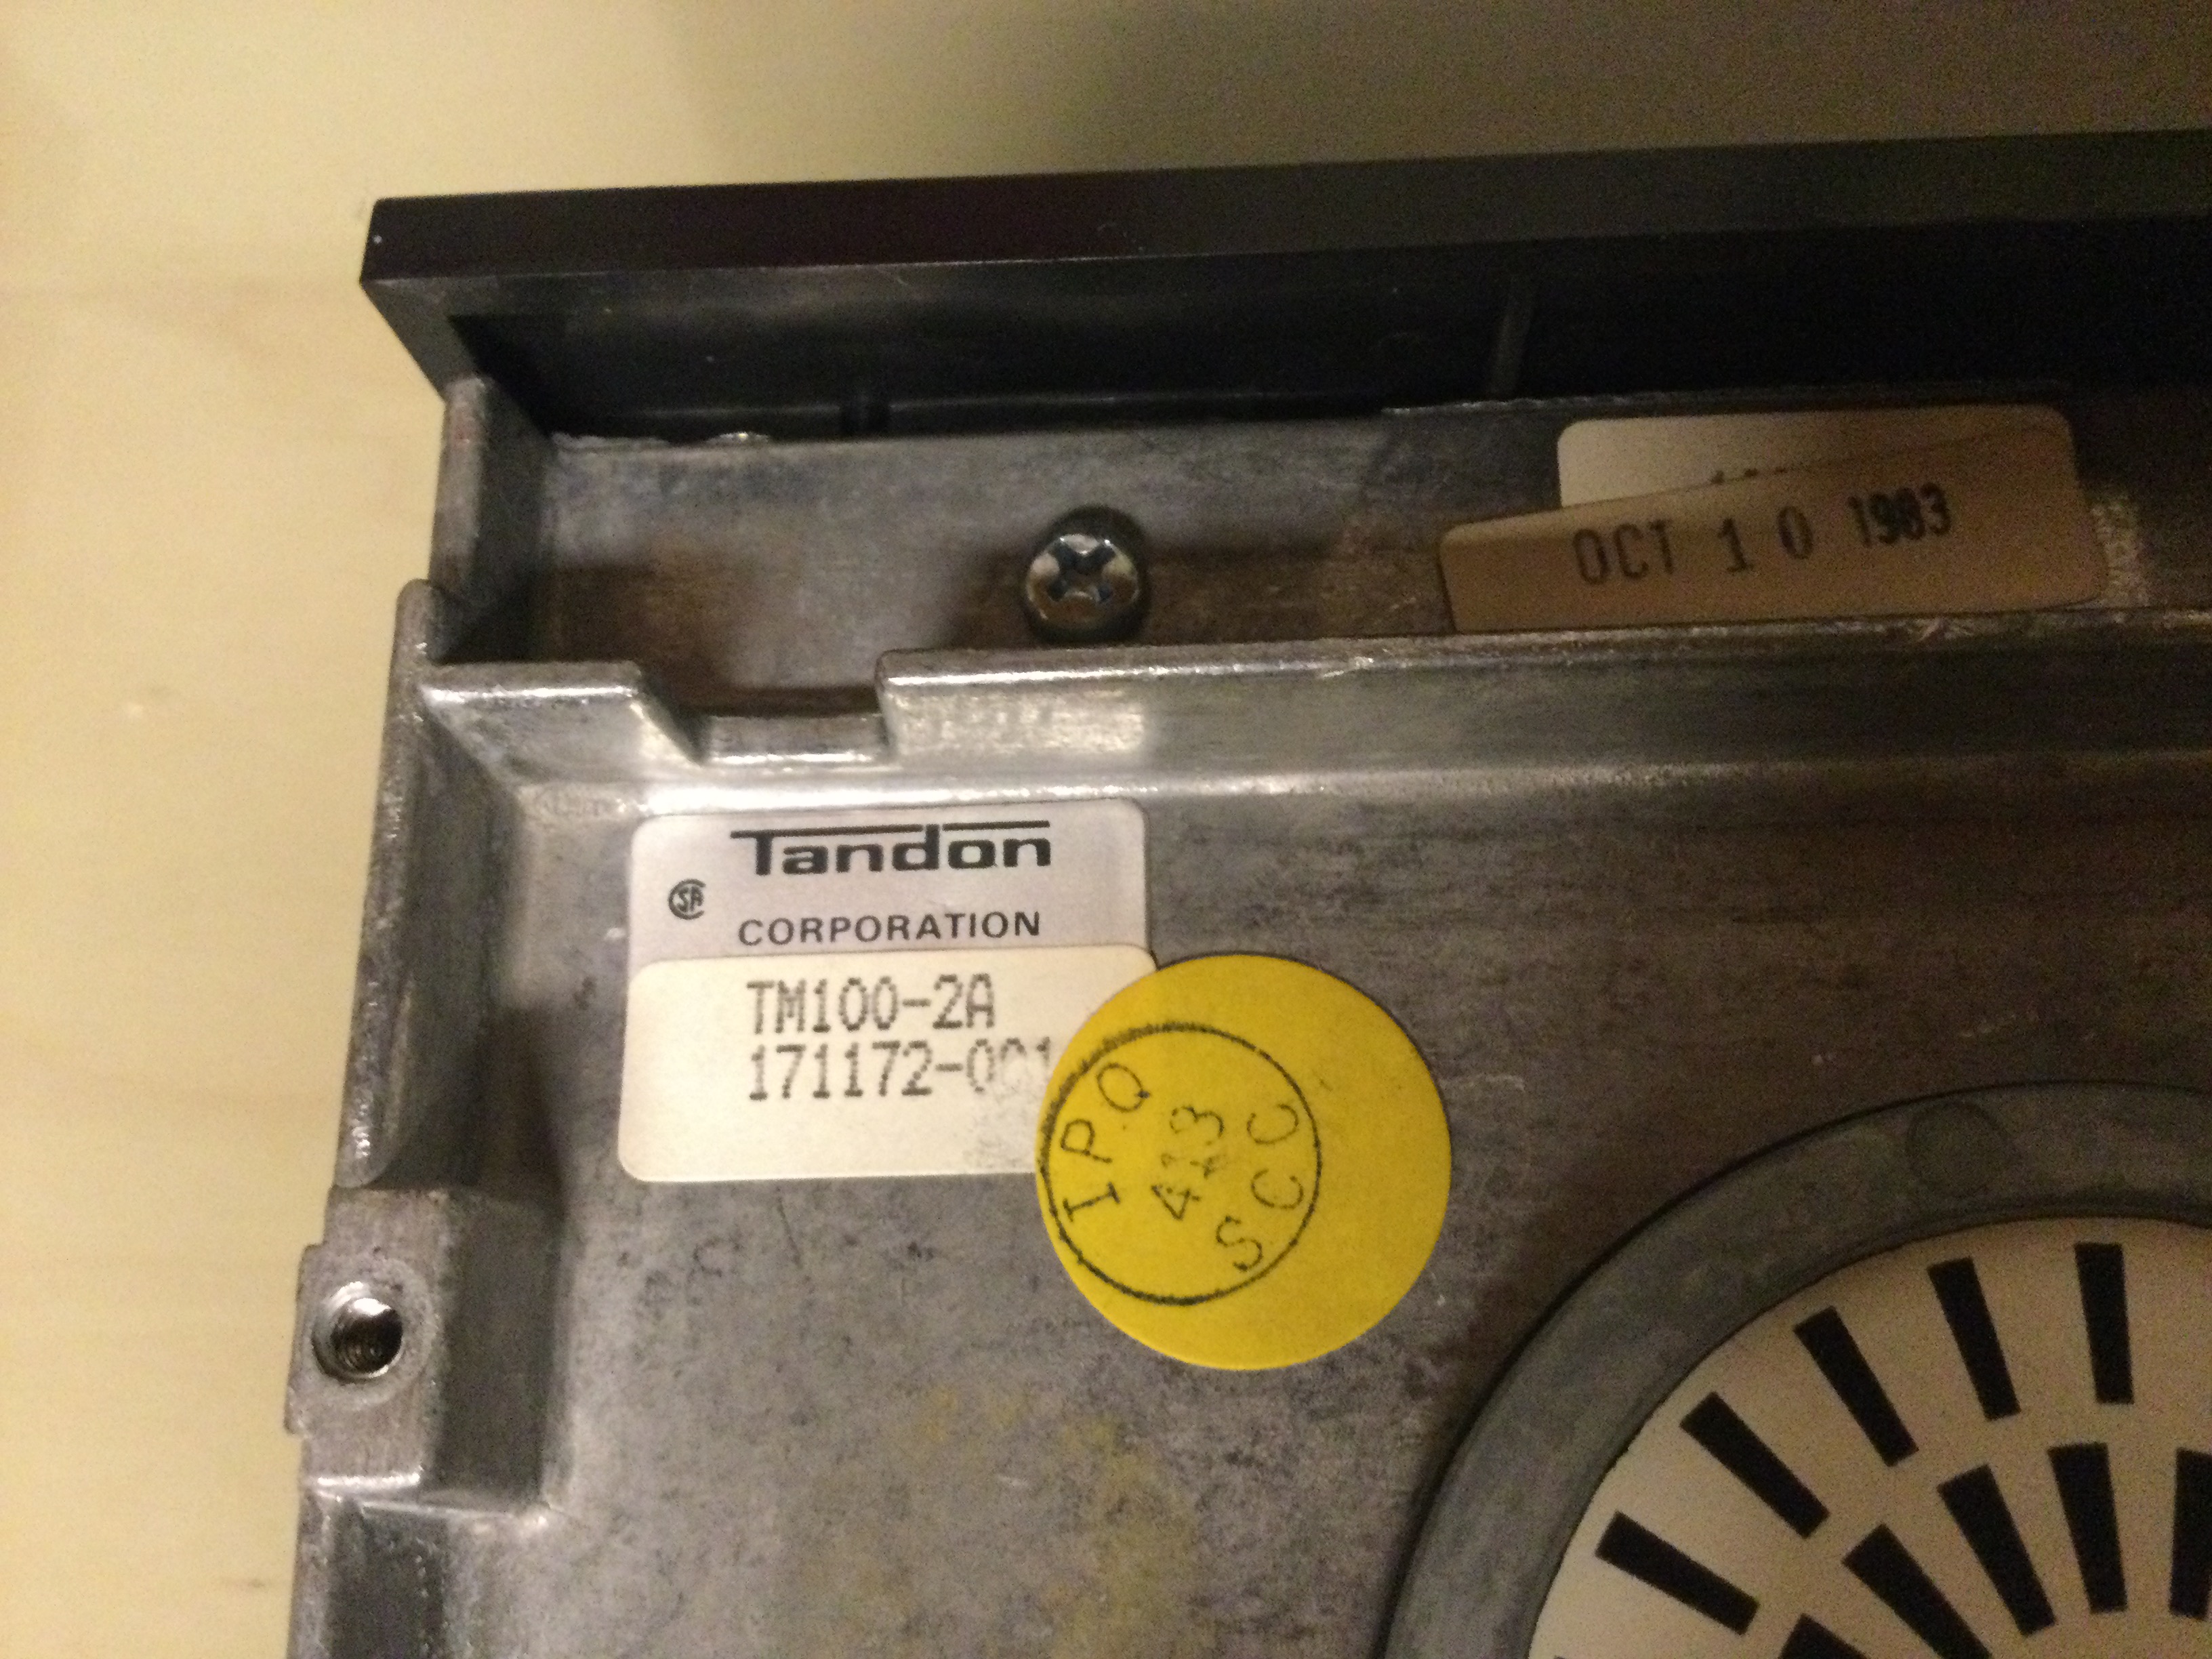 Das Floppy Laufwerk - Tandon Typenschild